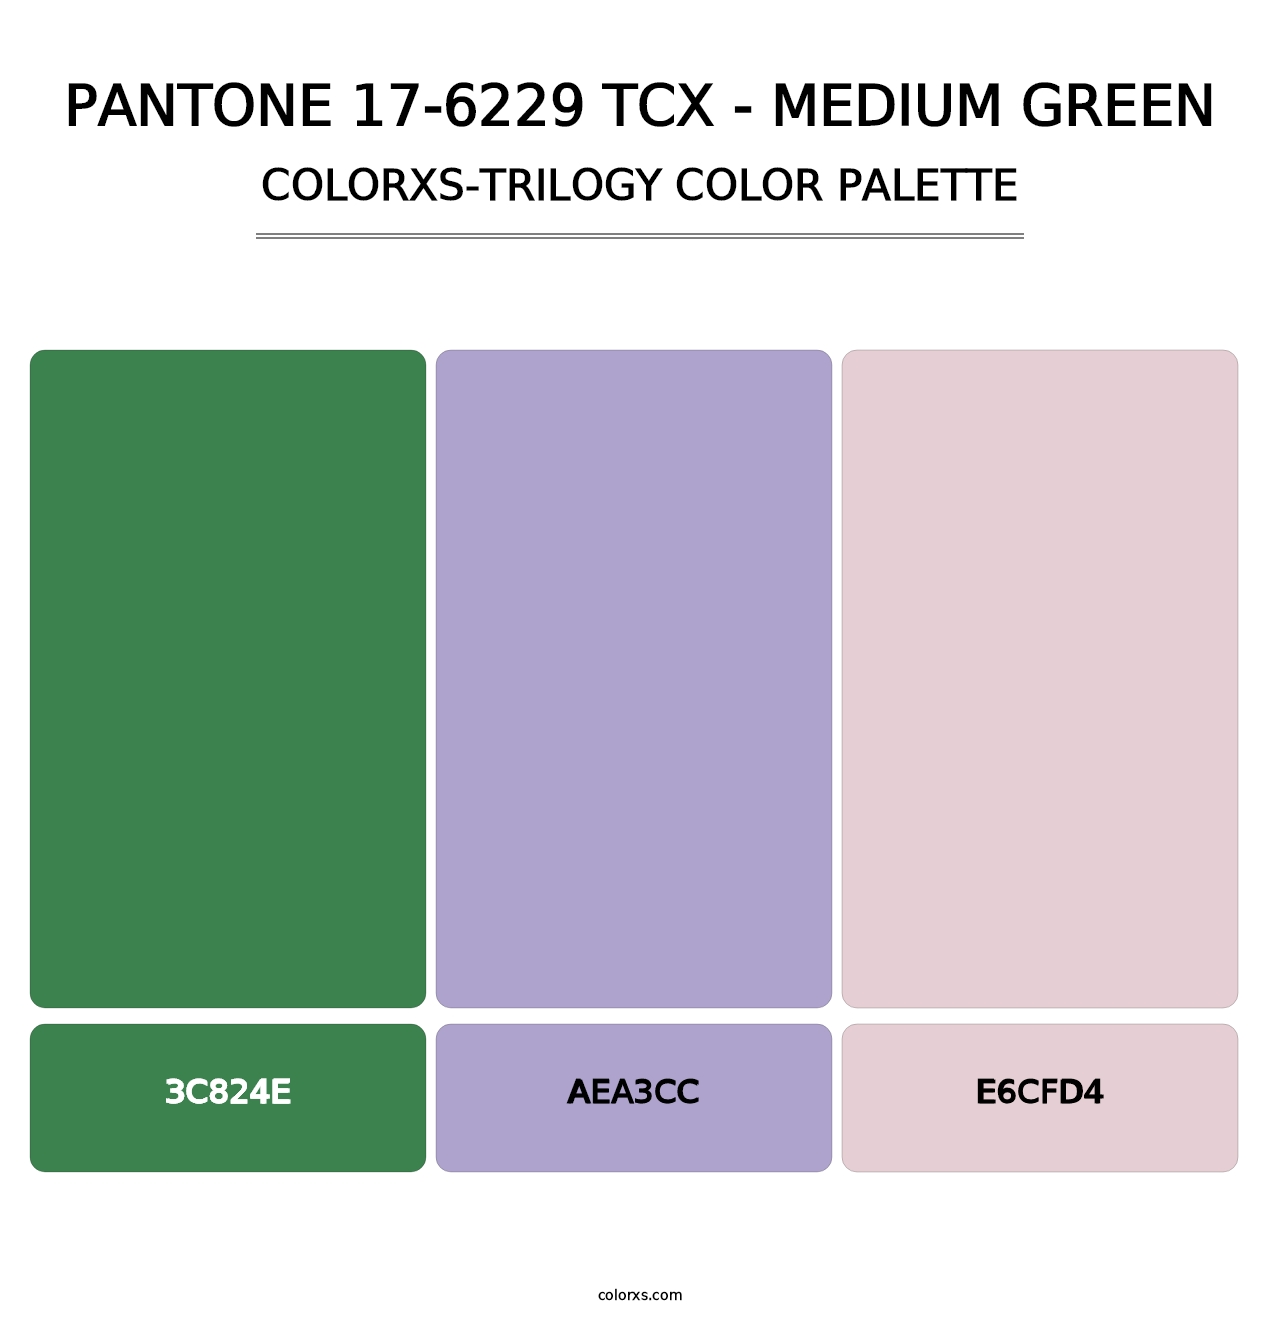 PANTONE 17-6229 TCX - Medium Green - Colorxs Trilogy Palette